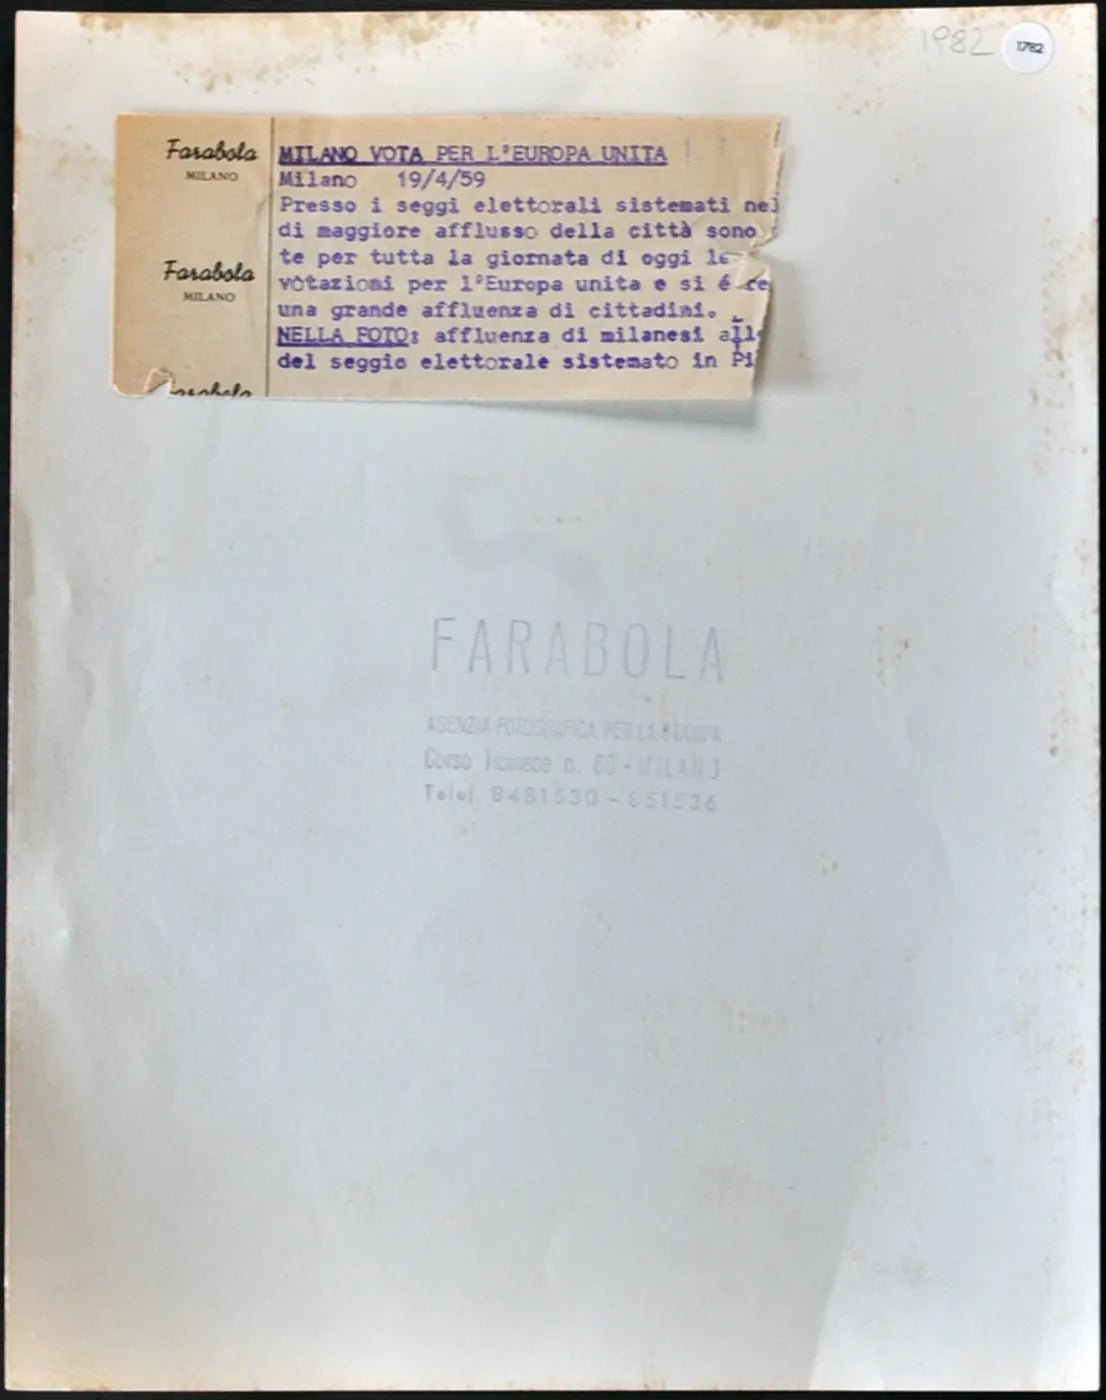 Votazioni per Europa Unita Milano 1959 Ft 1782 - Stampa 21x27 cm - Farabola Stampa ai sali d'argento